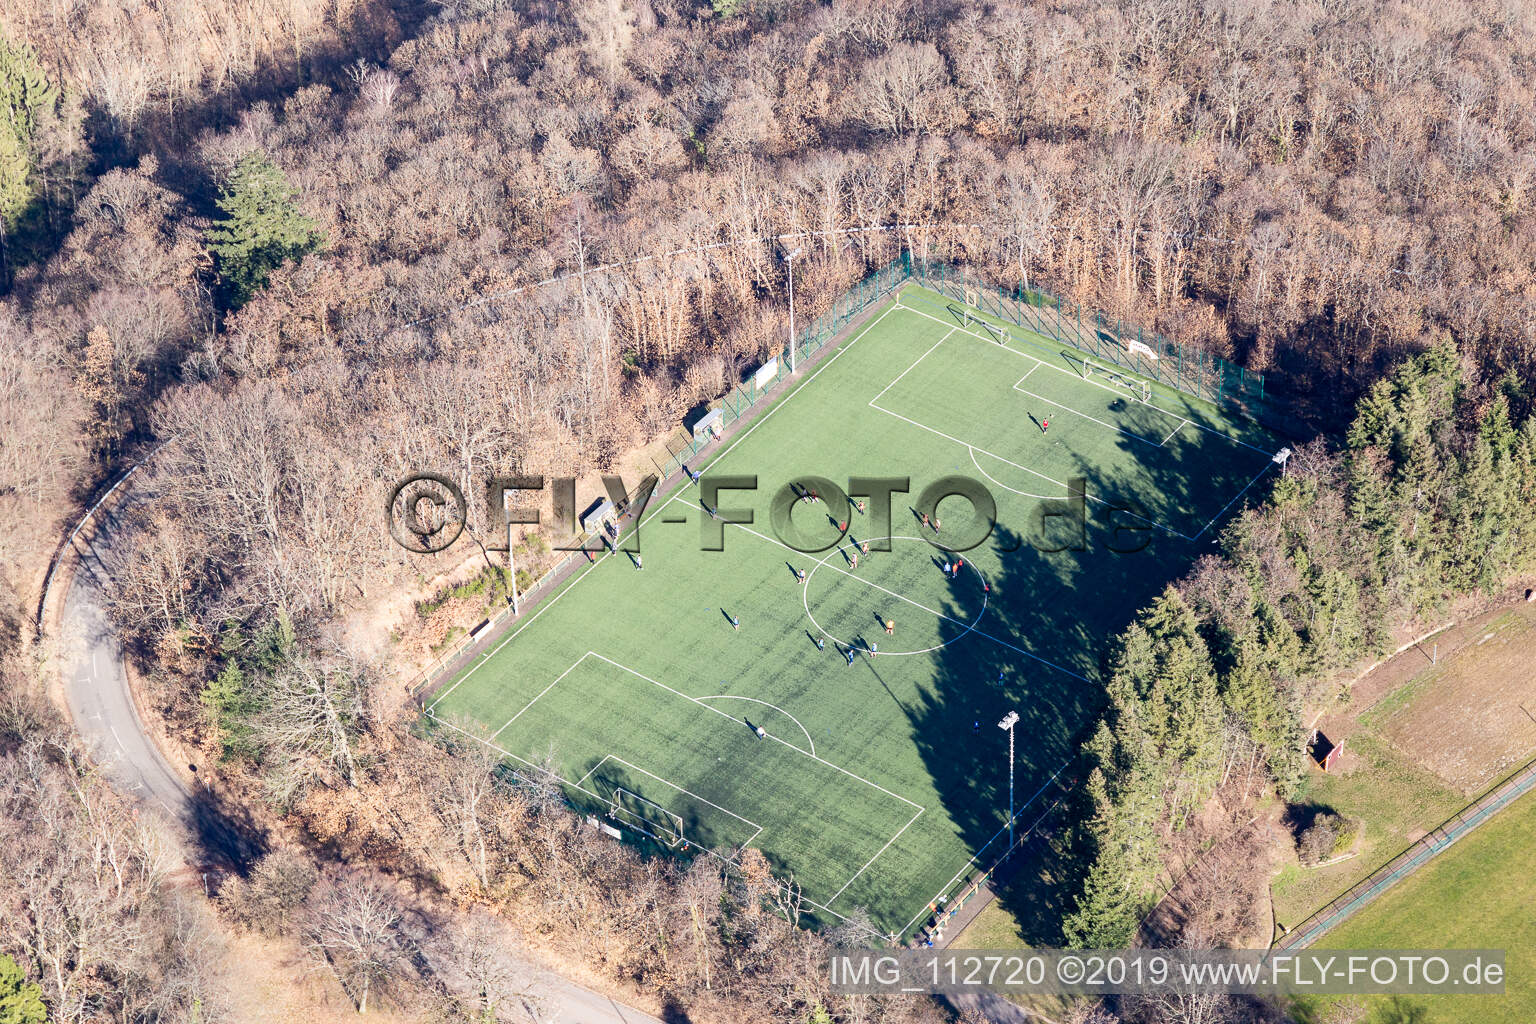 Sports school, SW-Deutscher FV eV in Edenkoben in the state Rhineland-Palatinate, Germany